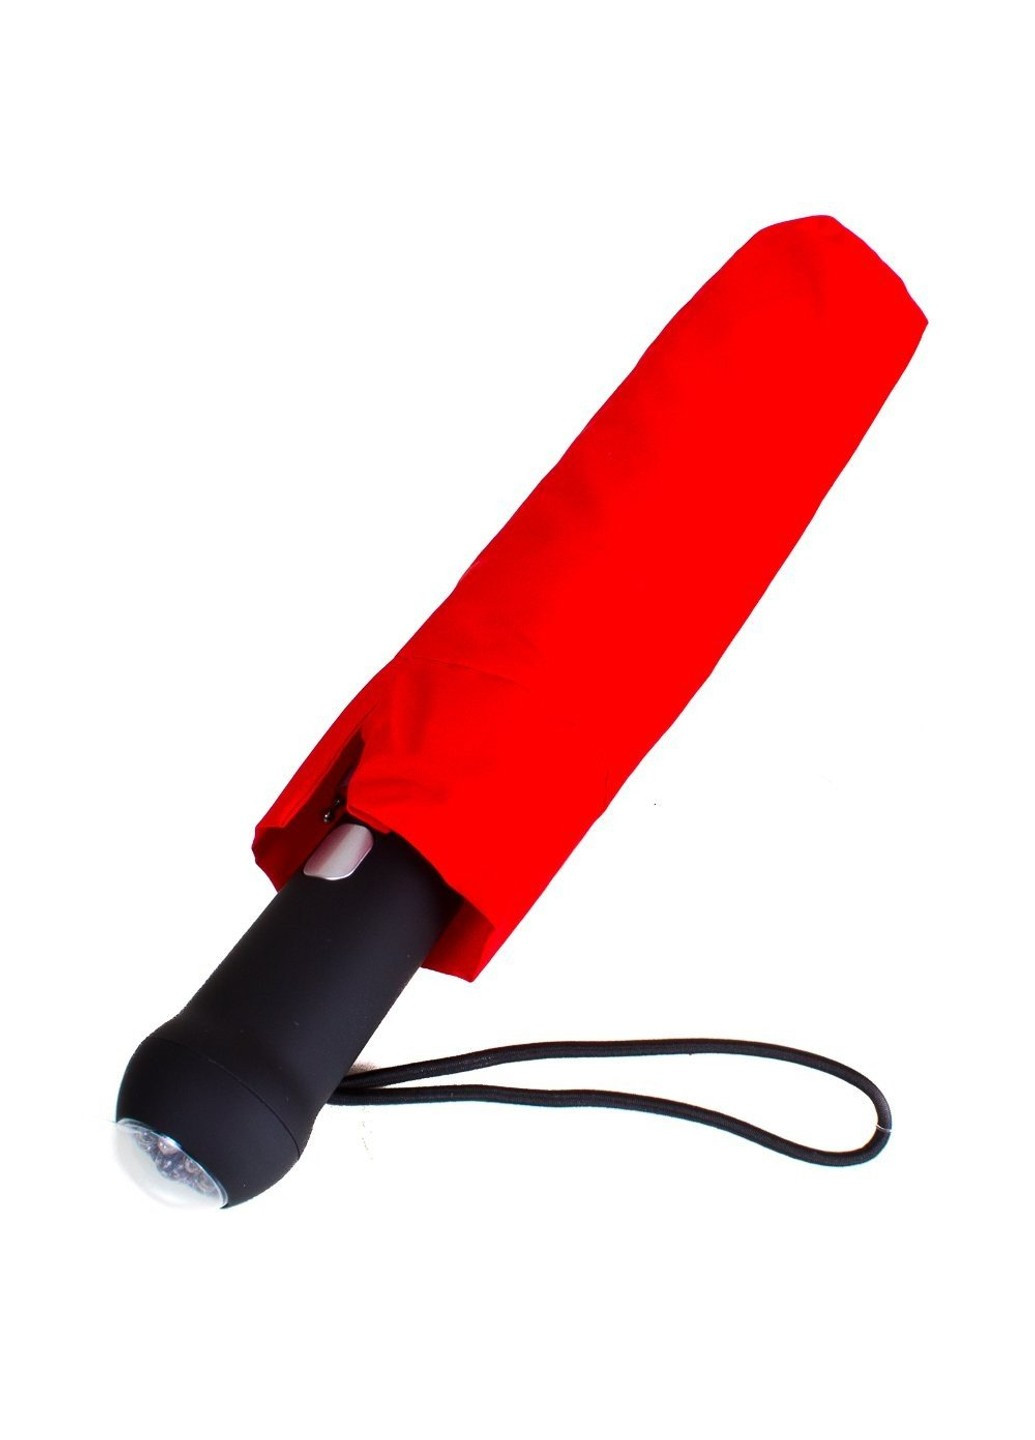 Красный Автоматический женский зонт с фонариком и светоотражающими вставками FARE (262976073)